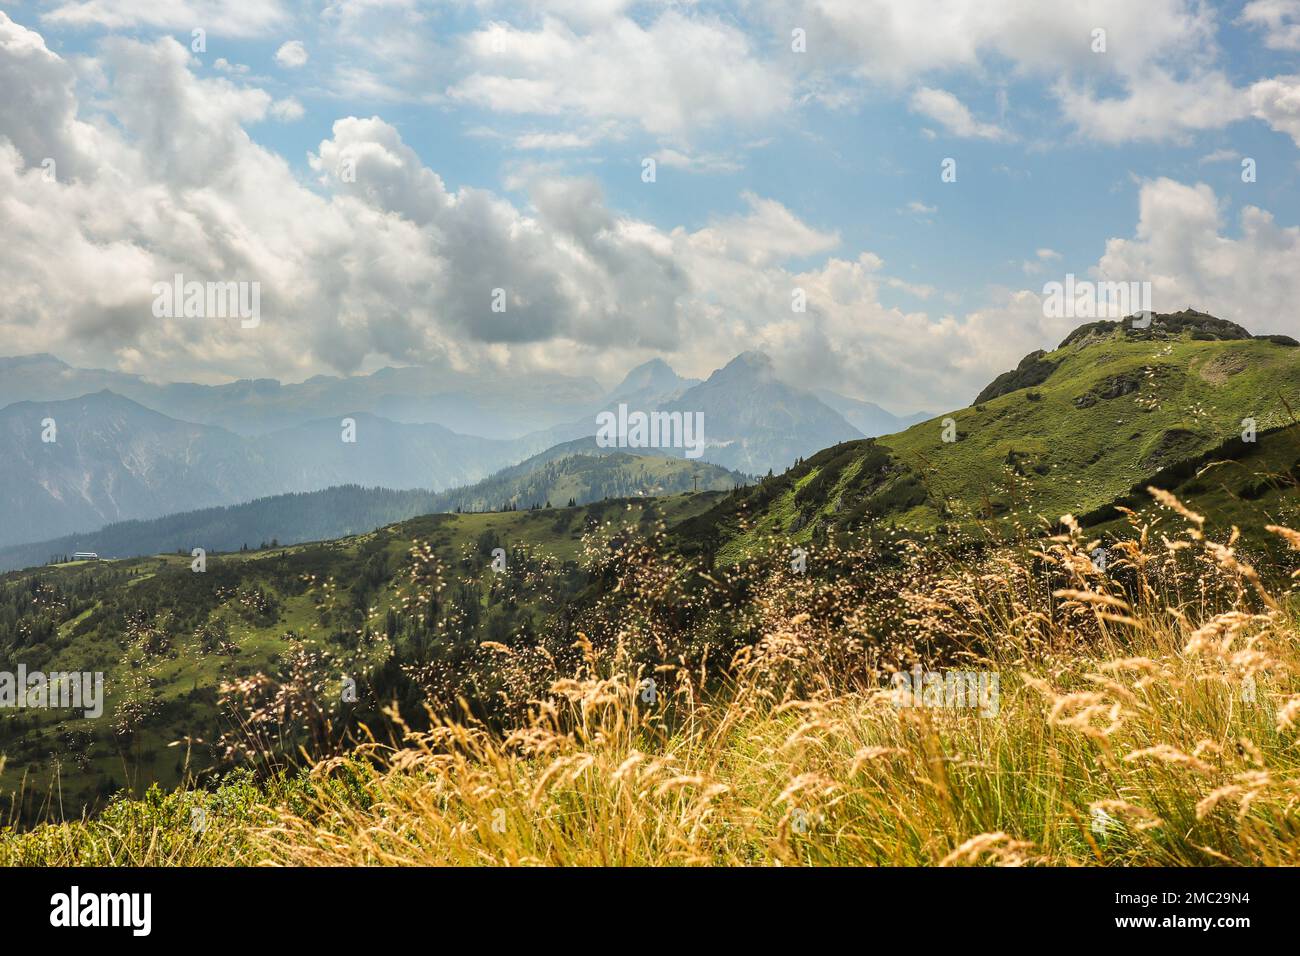 Belle vue sur la montagne dans la nature de Flachau. Scène en plein air avec prairie et pics alpins avec nuages pendant la journée d'été en Autriche. Banque D'Images